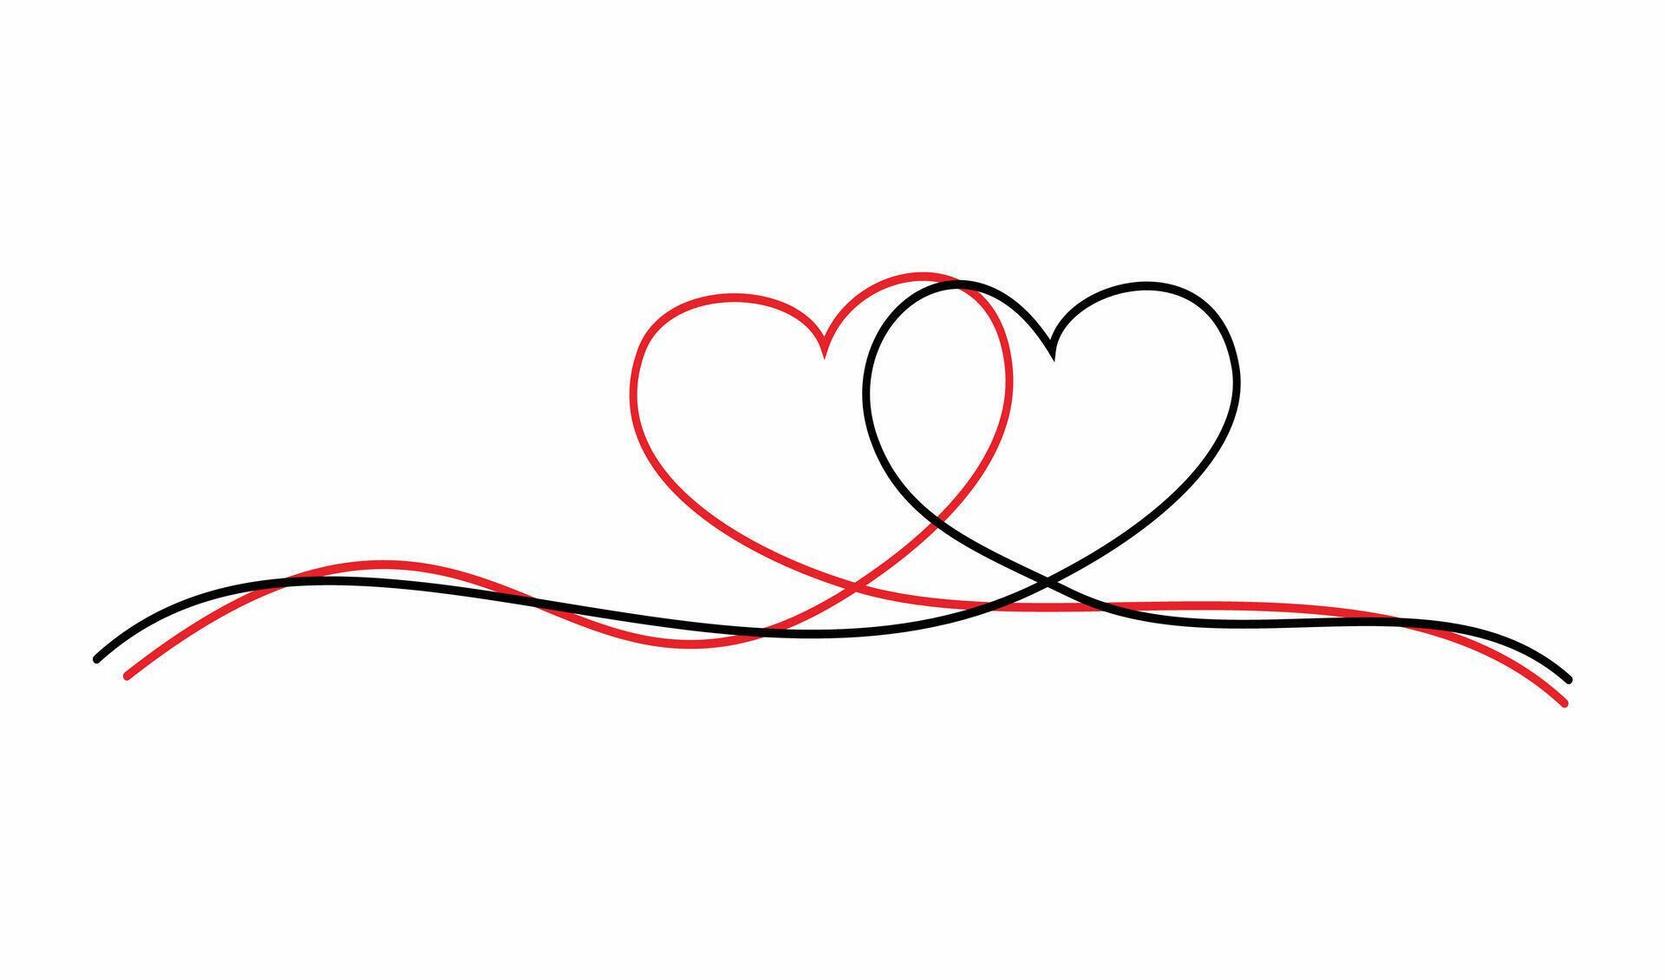 deux cœurs icône lié chaque autre. rouge ligne cœur et noir ligne cœur entrer en collision. Facile et minimaliste cœurs conception élément. vecteur